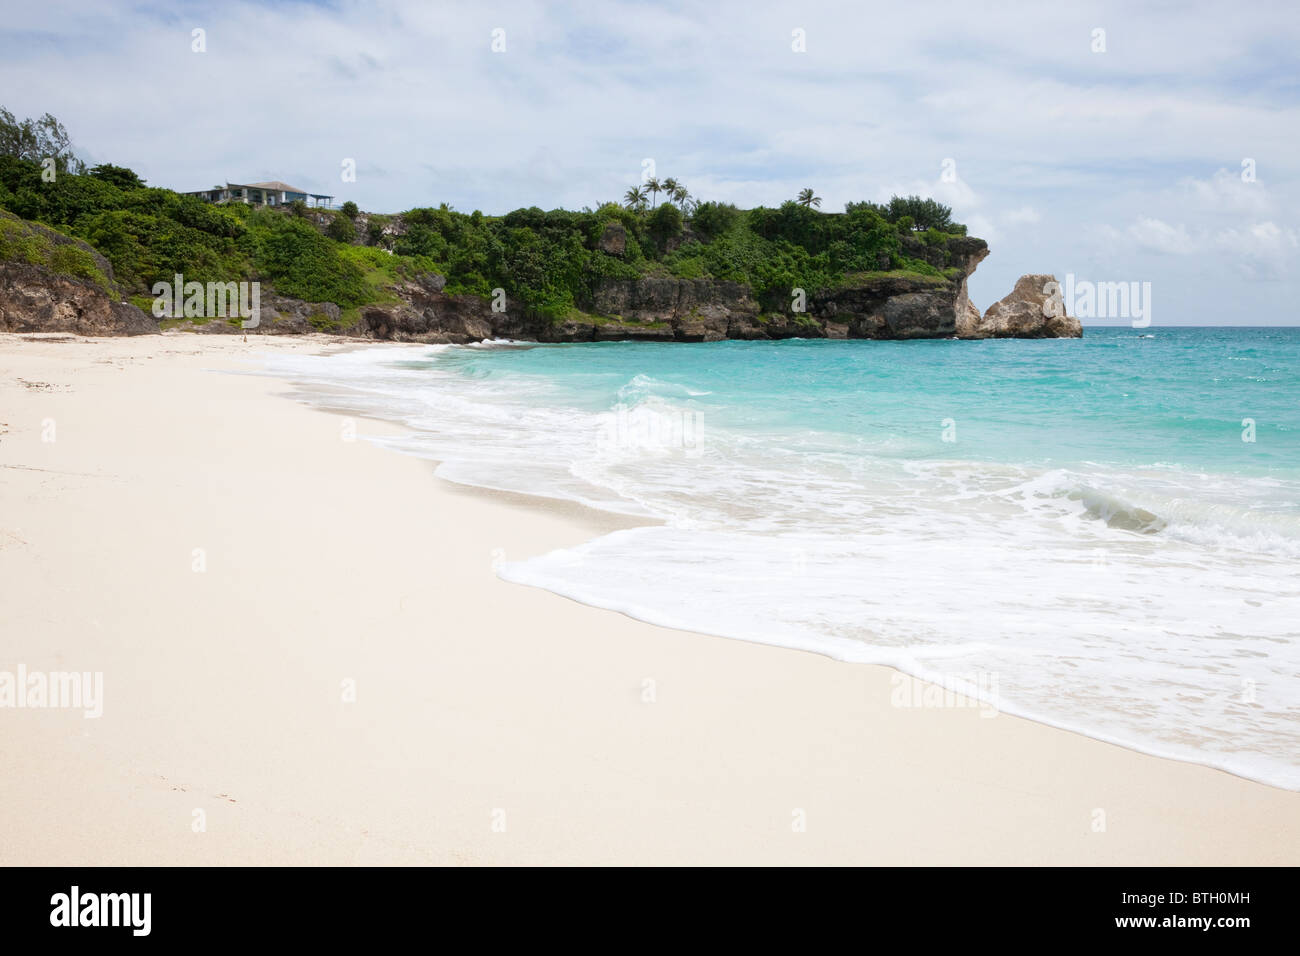 Falli Bay, Barbados, Caraibi, West Indies. Spiaggia isolata con una baia protetta a sud dell'isola. Foto Stock